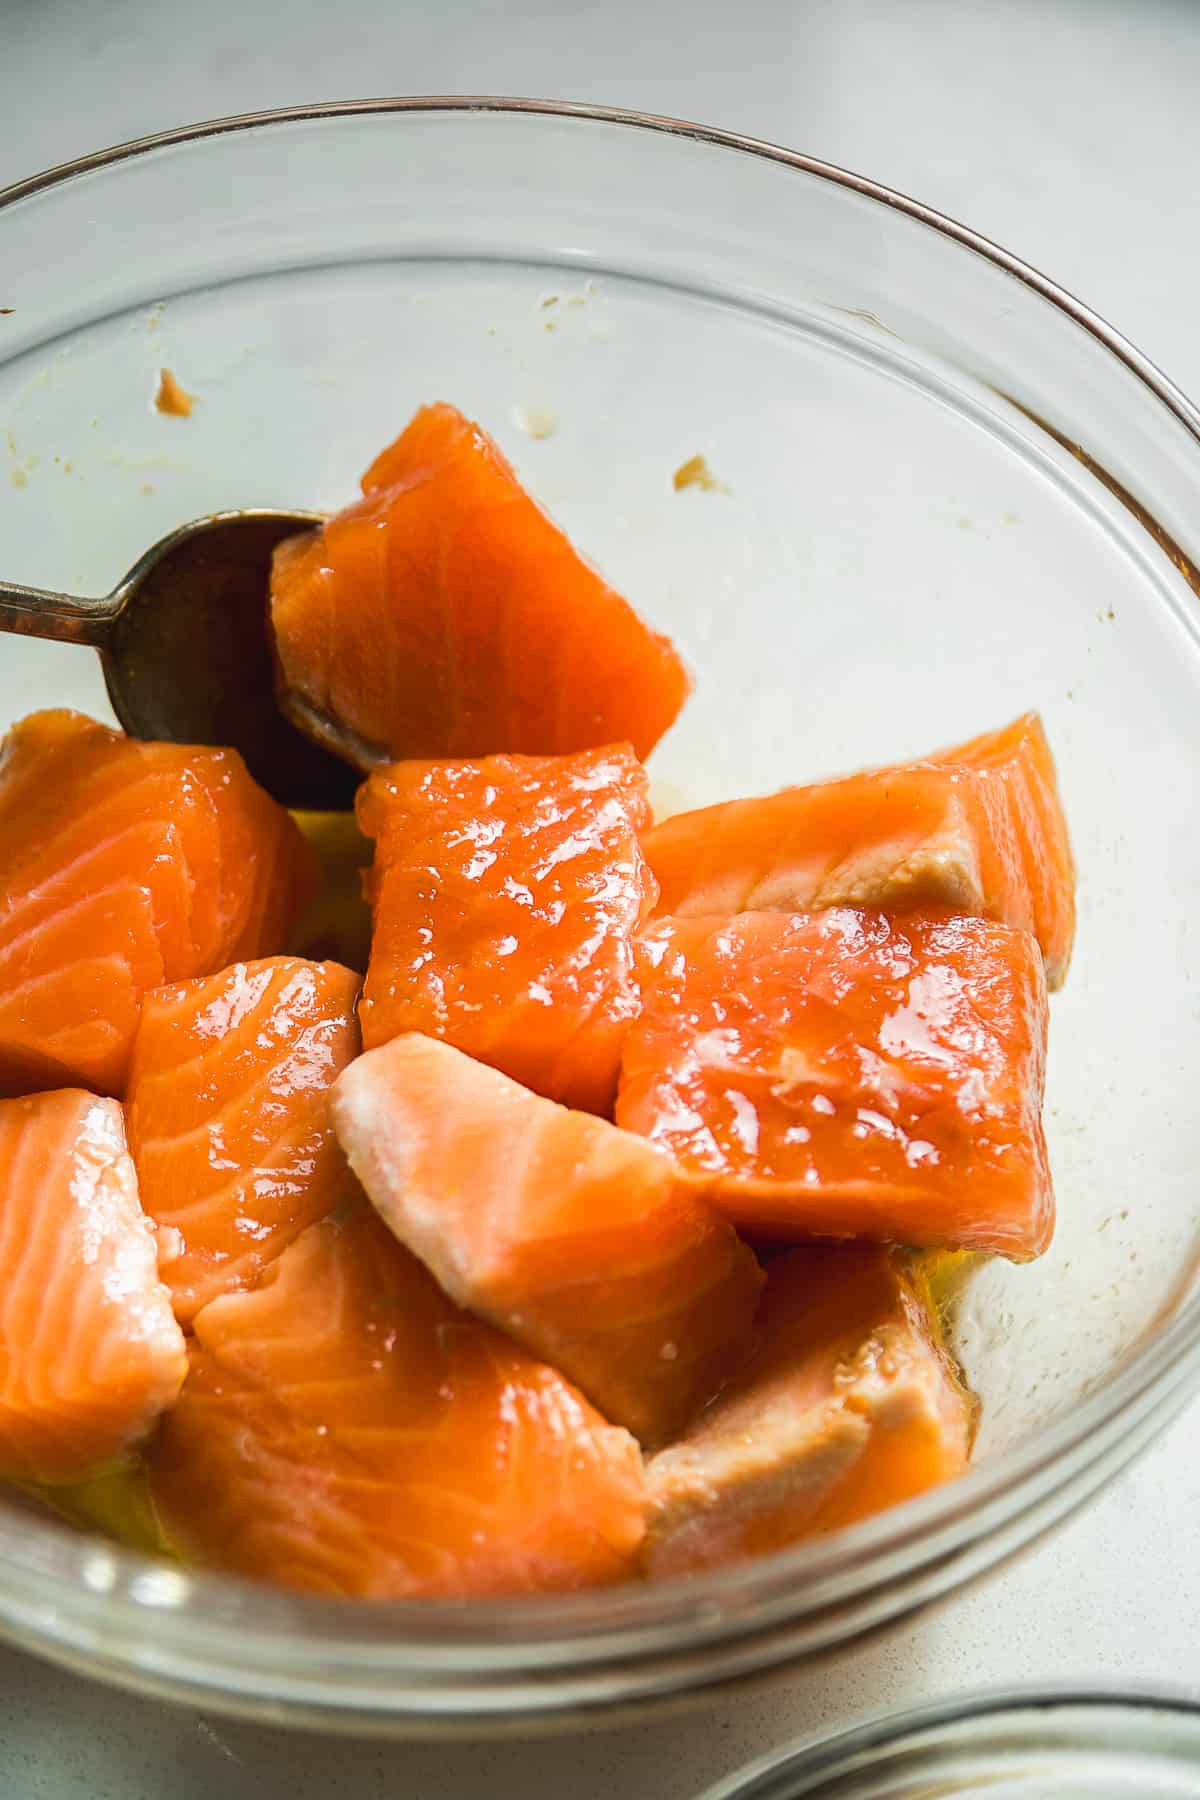 Salmon bites tossed in teriyaki sauce in a glass bowl.